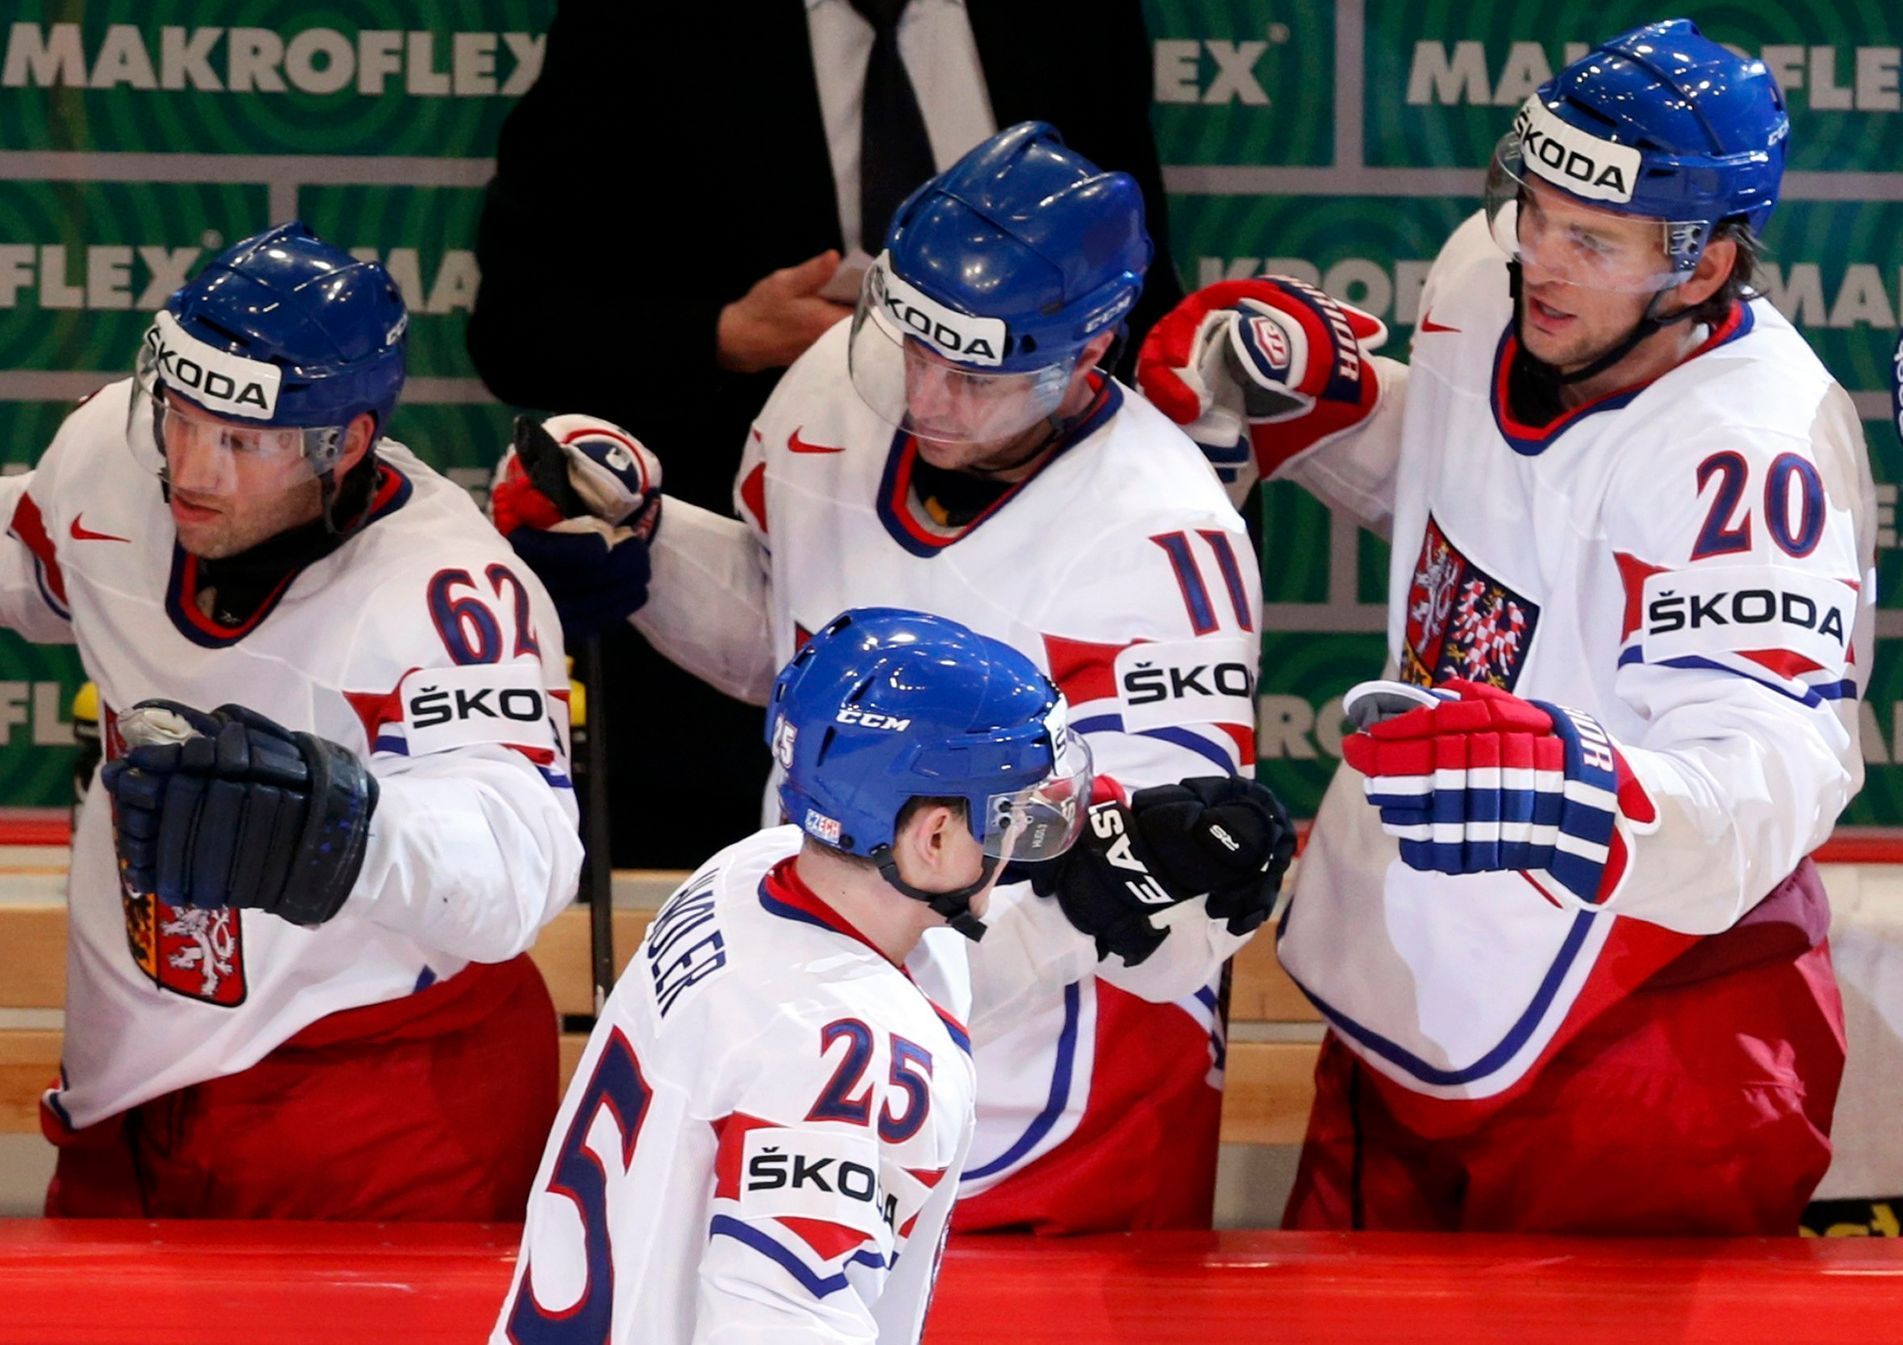 Hokej, MS 2013, Česko - Švýcarsko: Jiří Hudler slaví gól na 2:2